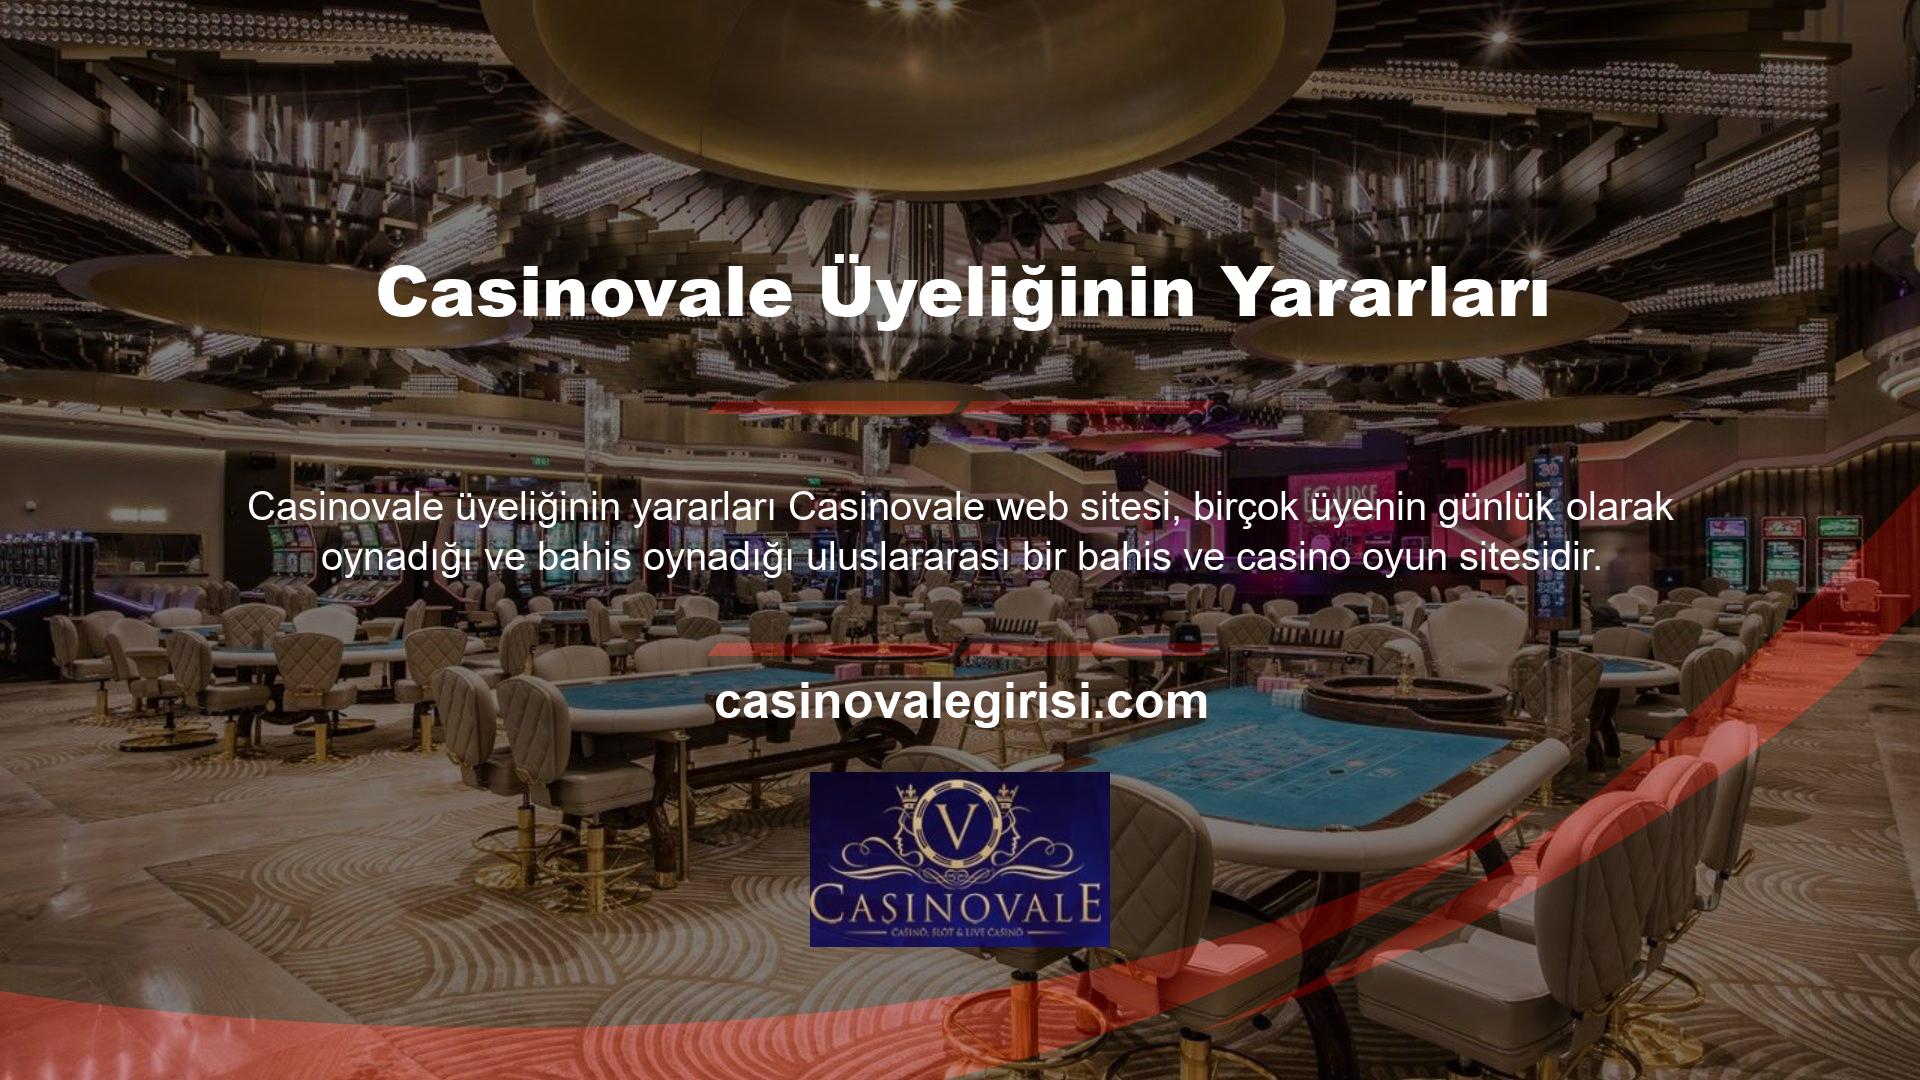 Casinovale ana sayfasında sitenin konumu, hizmetleri, oyunları, ödeme yöntemleri ve yatırım yöntemleri hakkında bilgiler verilmektedir